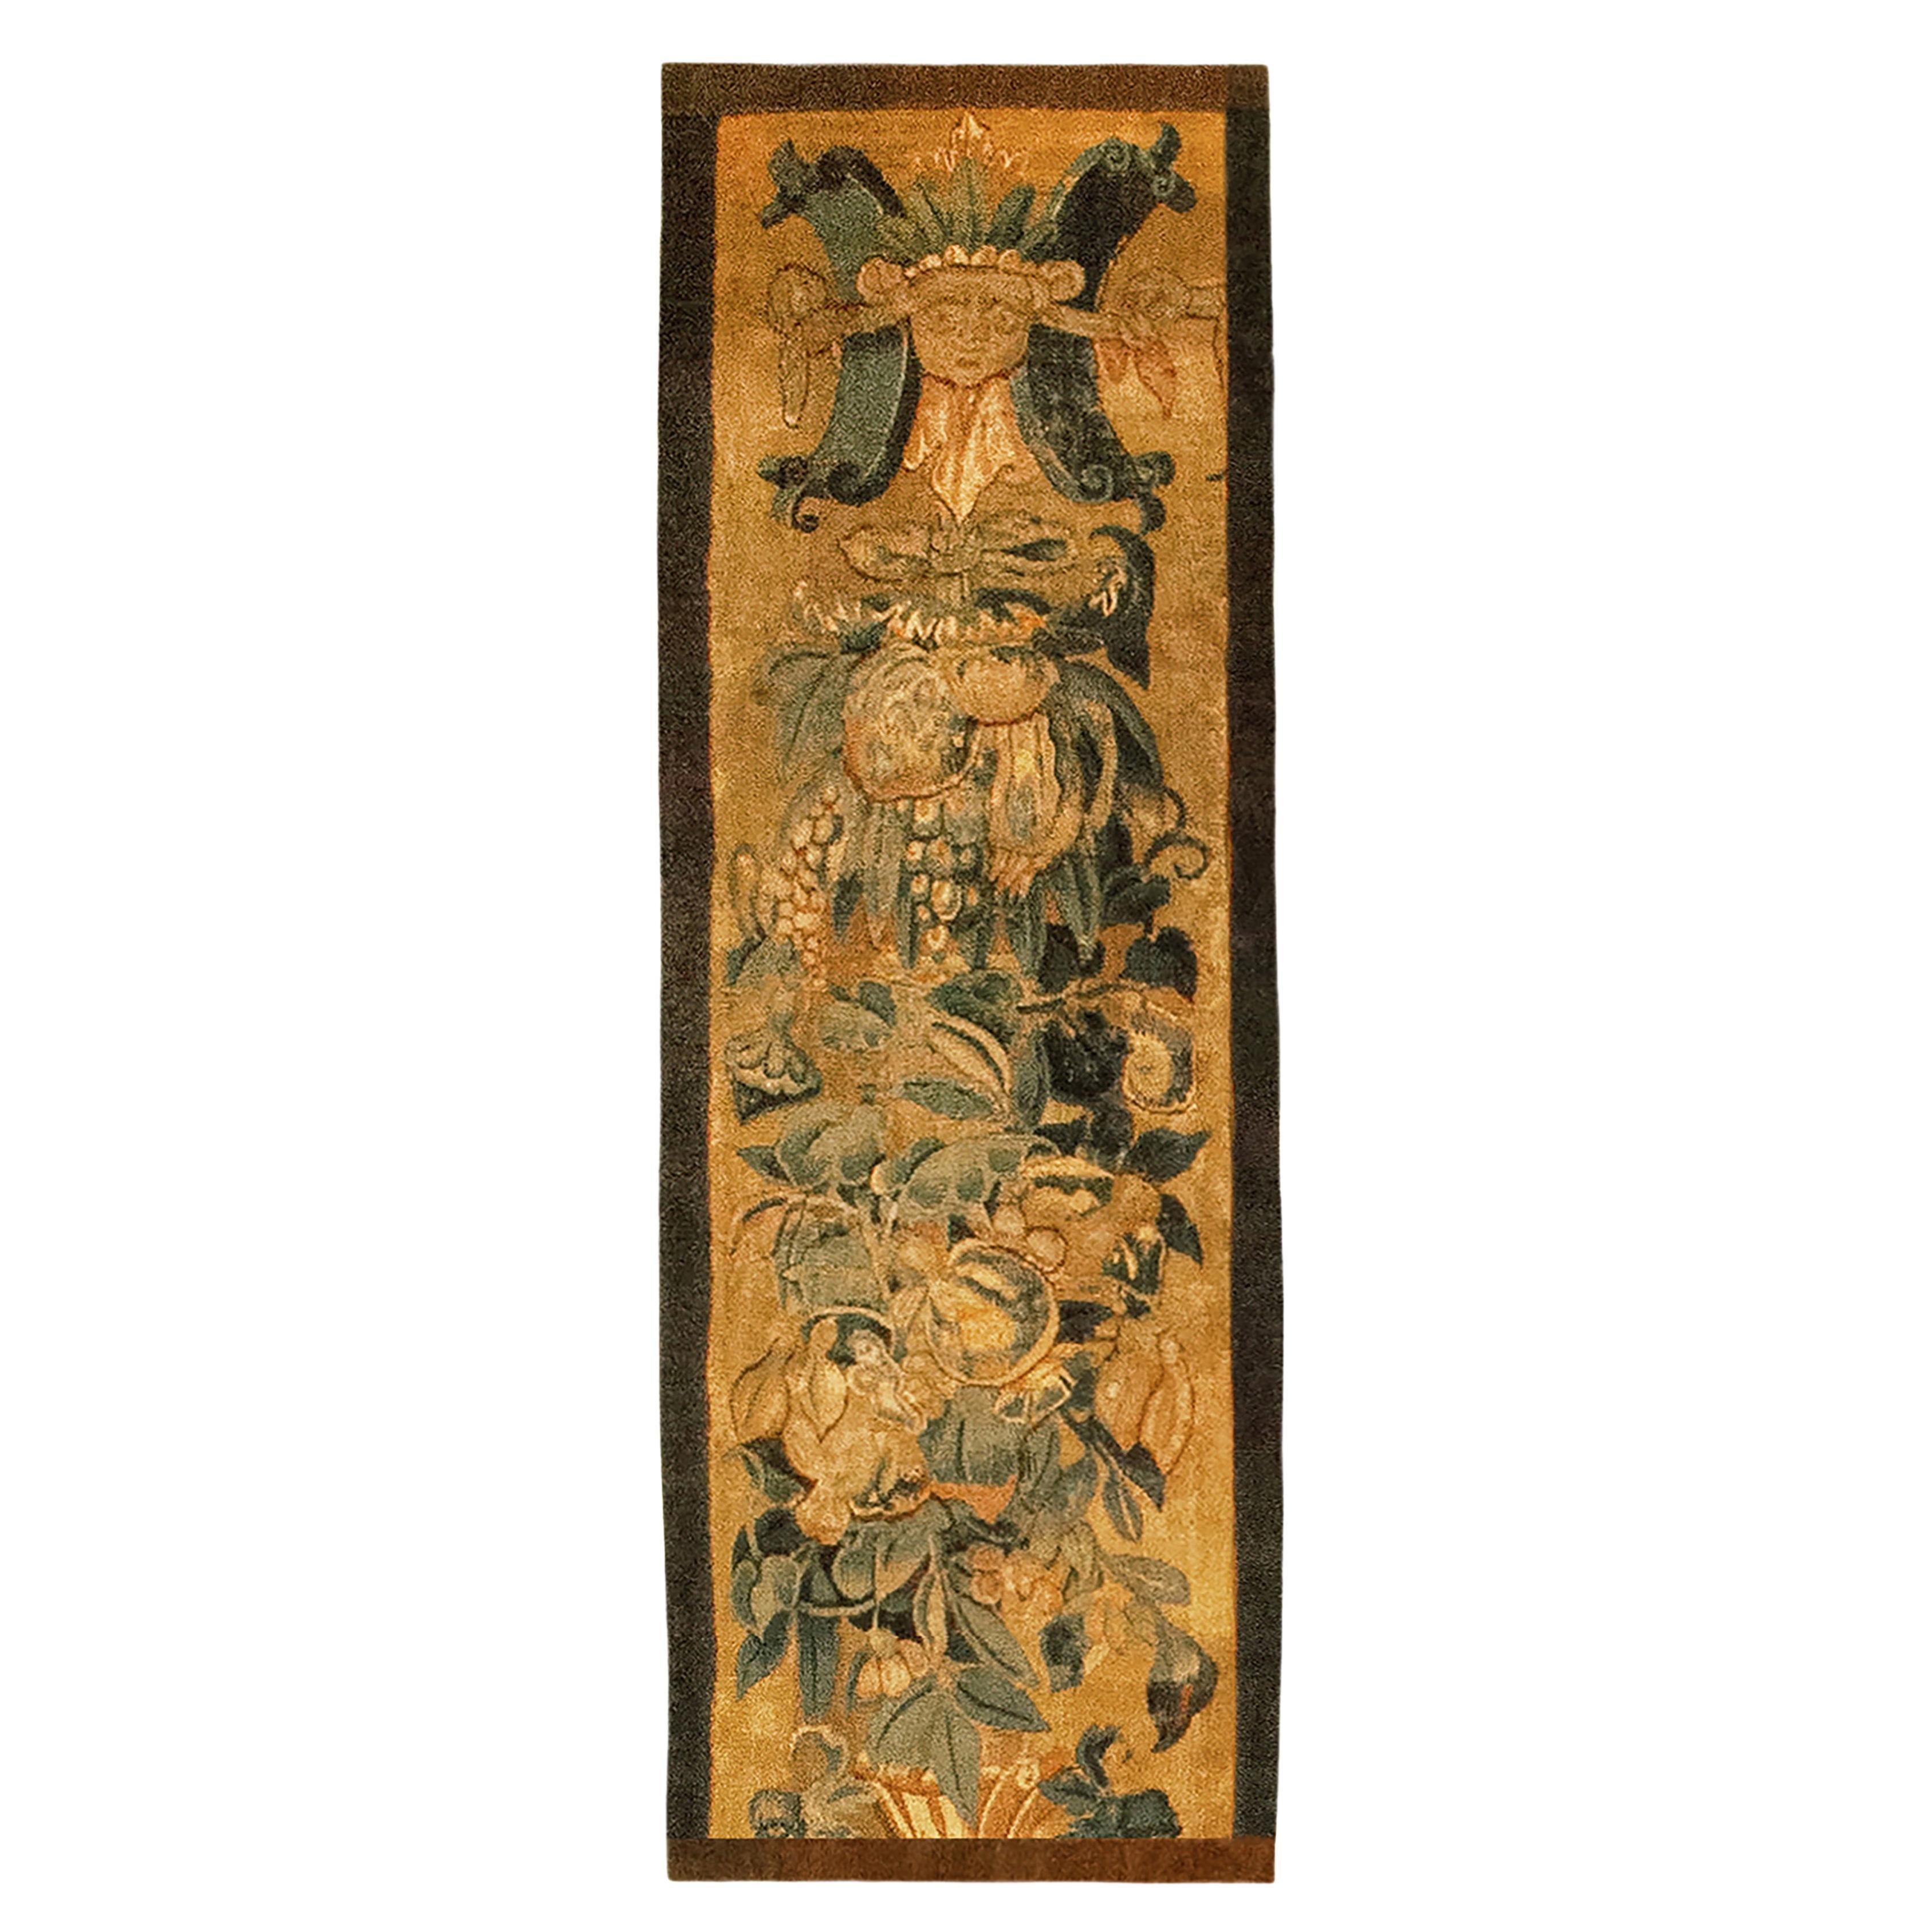 Panneau de tapisserie historique flamande de la fin du XVIe siècle, orienté verticalement, à motifs floraux